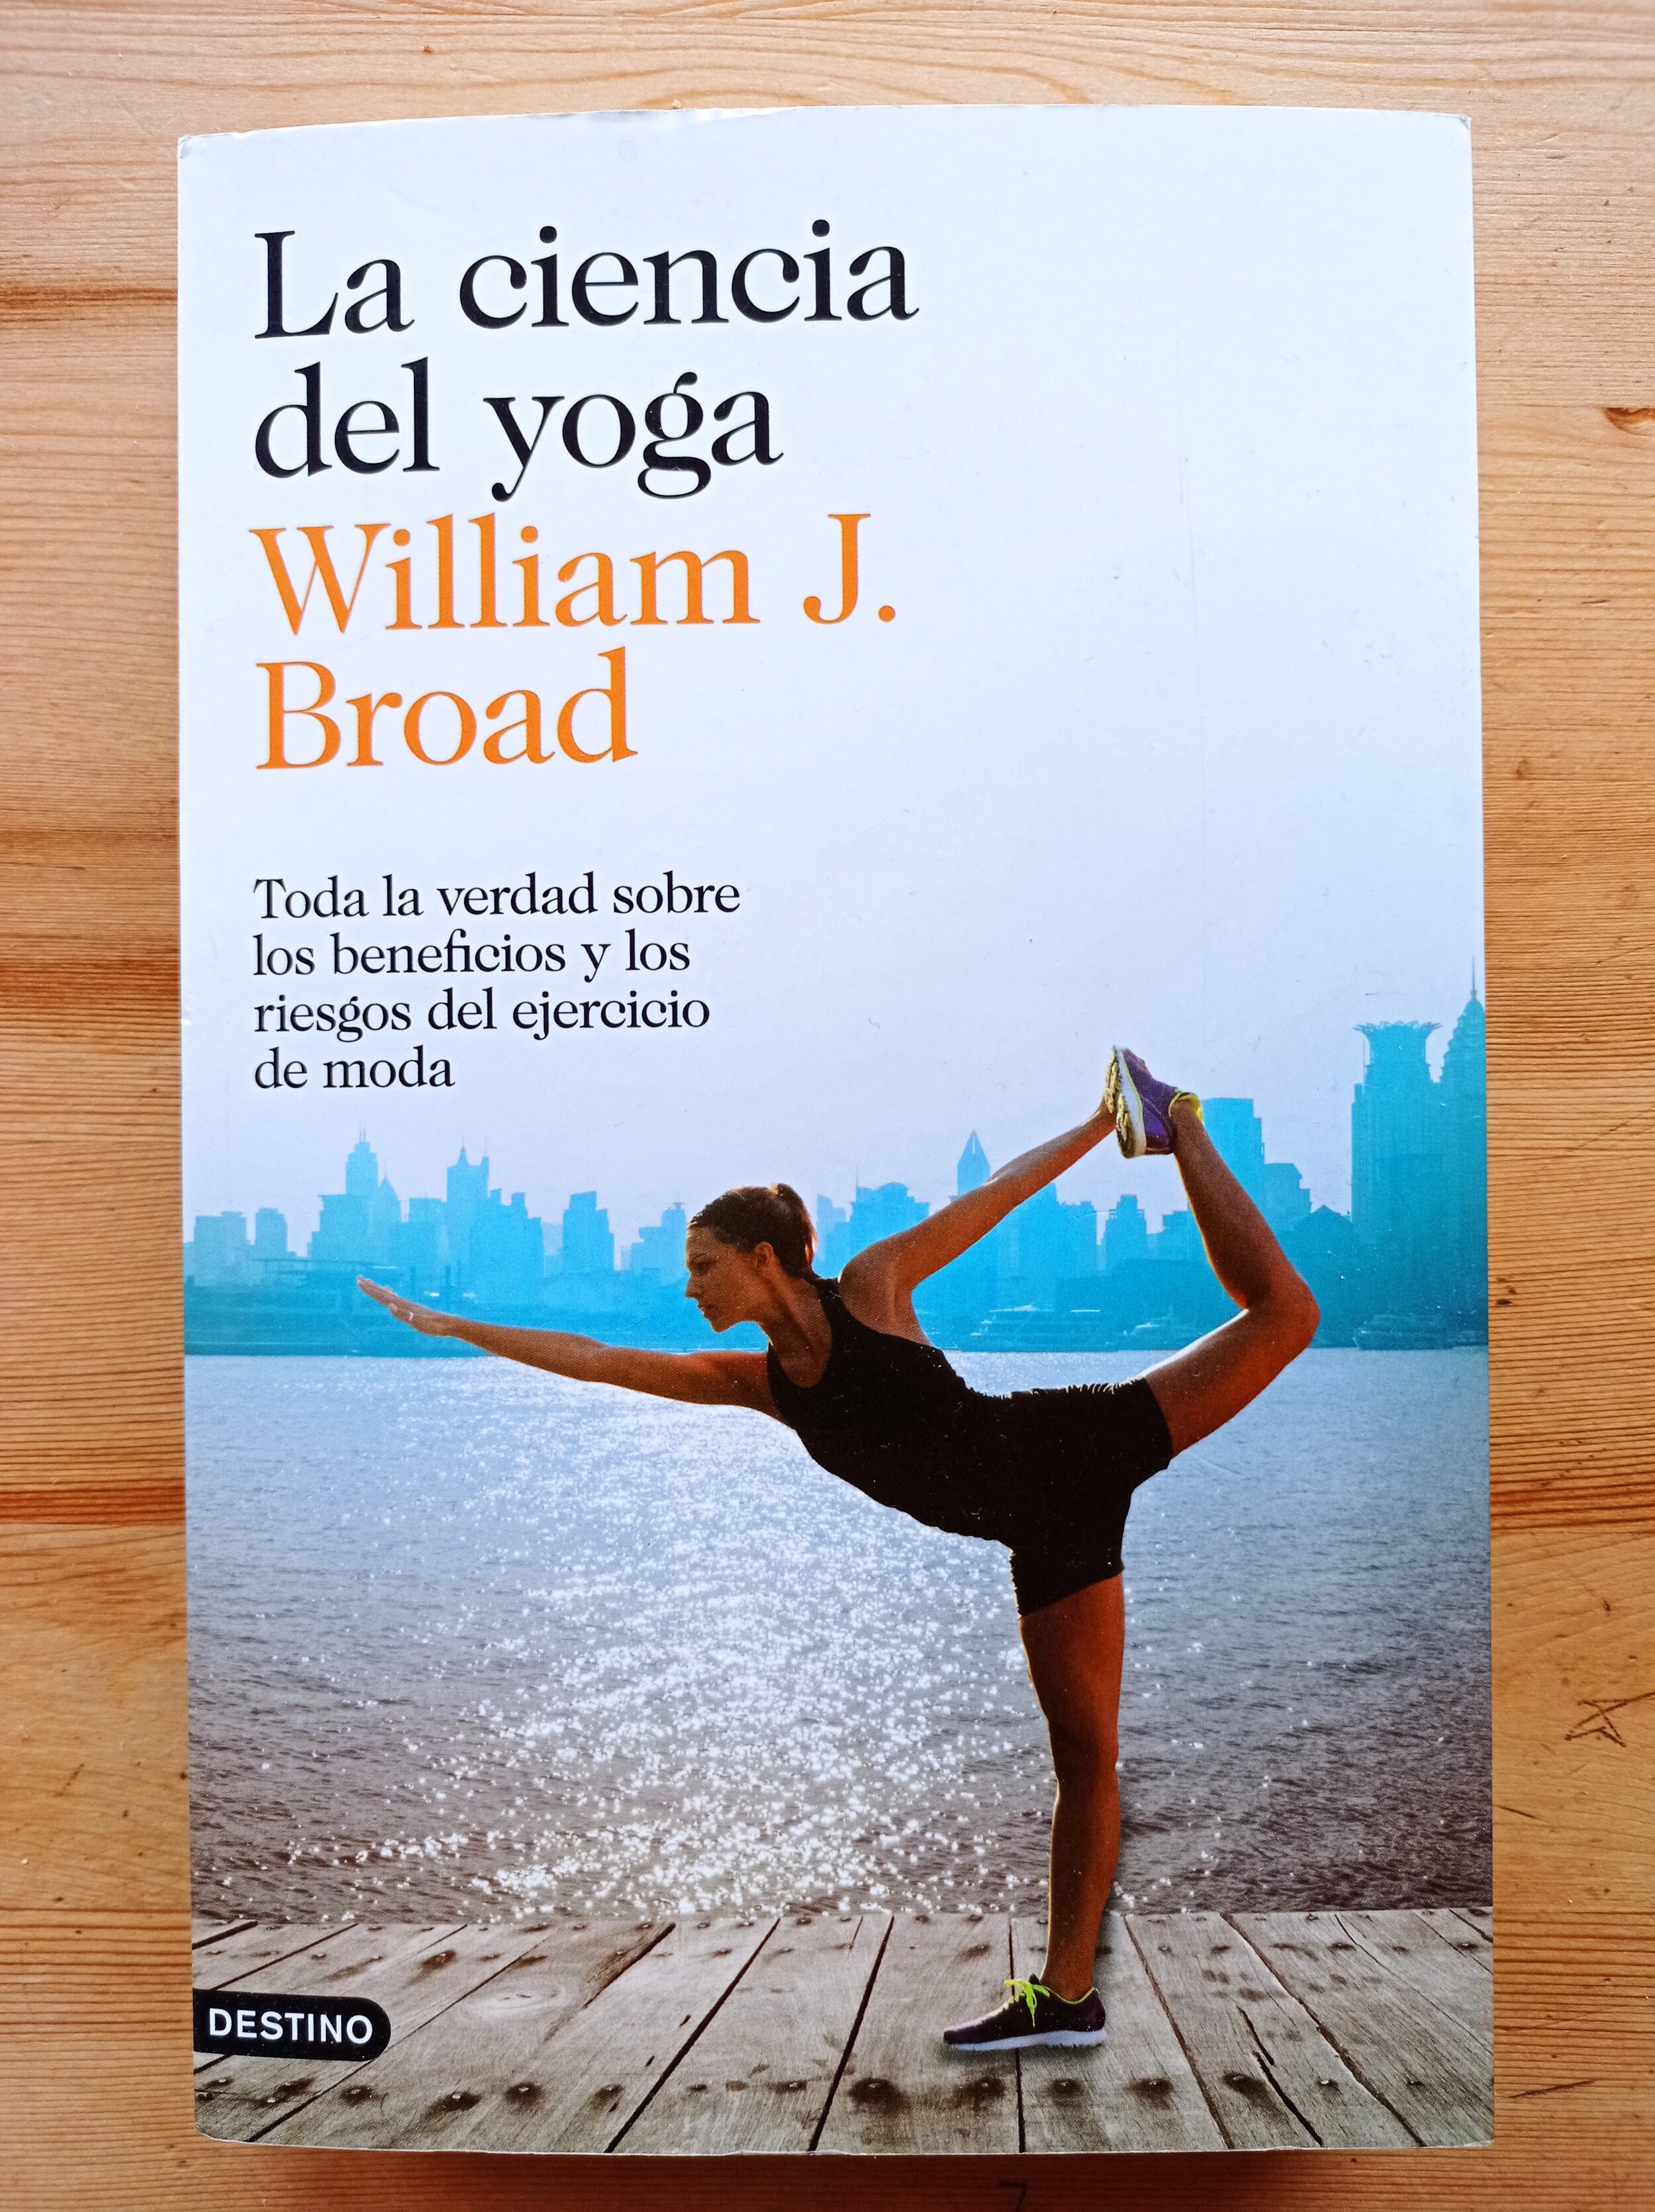 12 cuestiones fundamentales sobre el yoga terapéutico o restaurativo, su  historia y práctica.